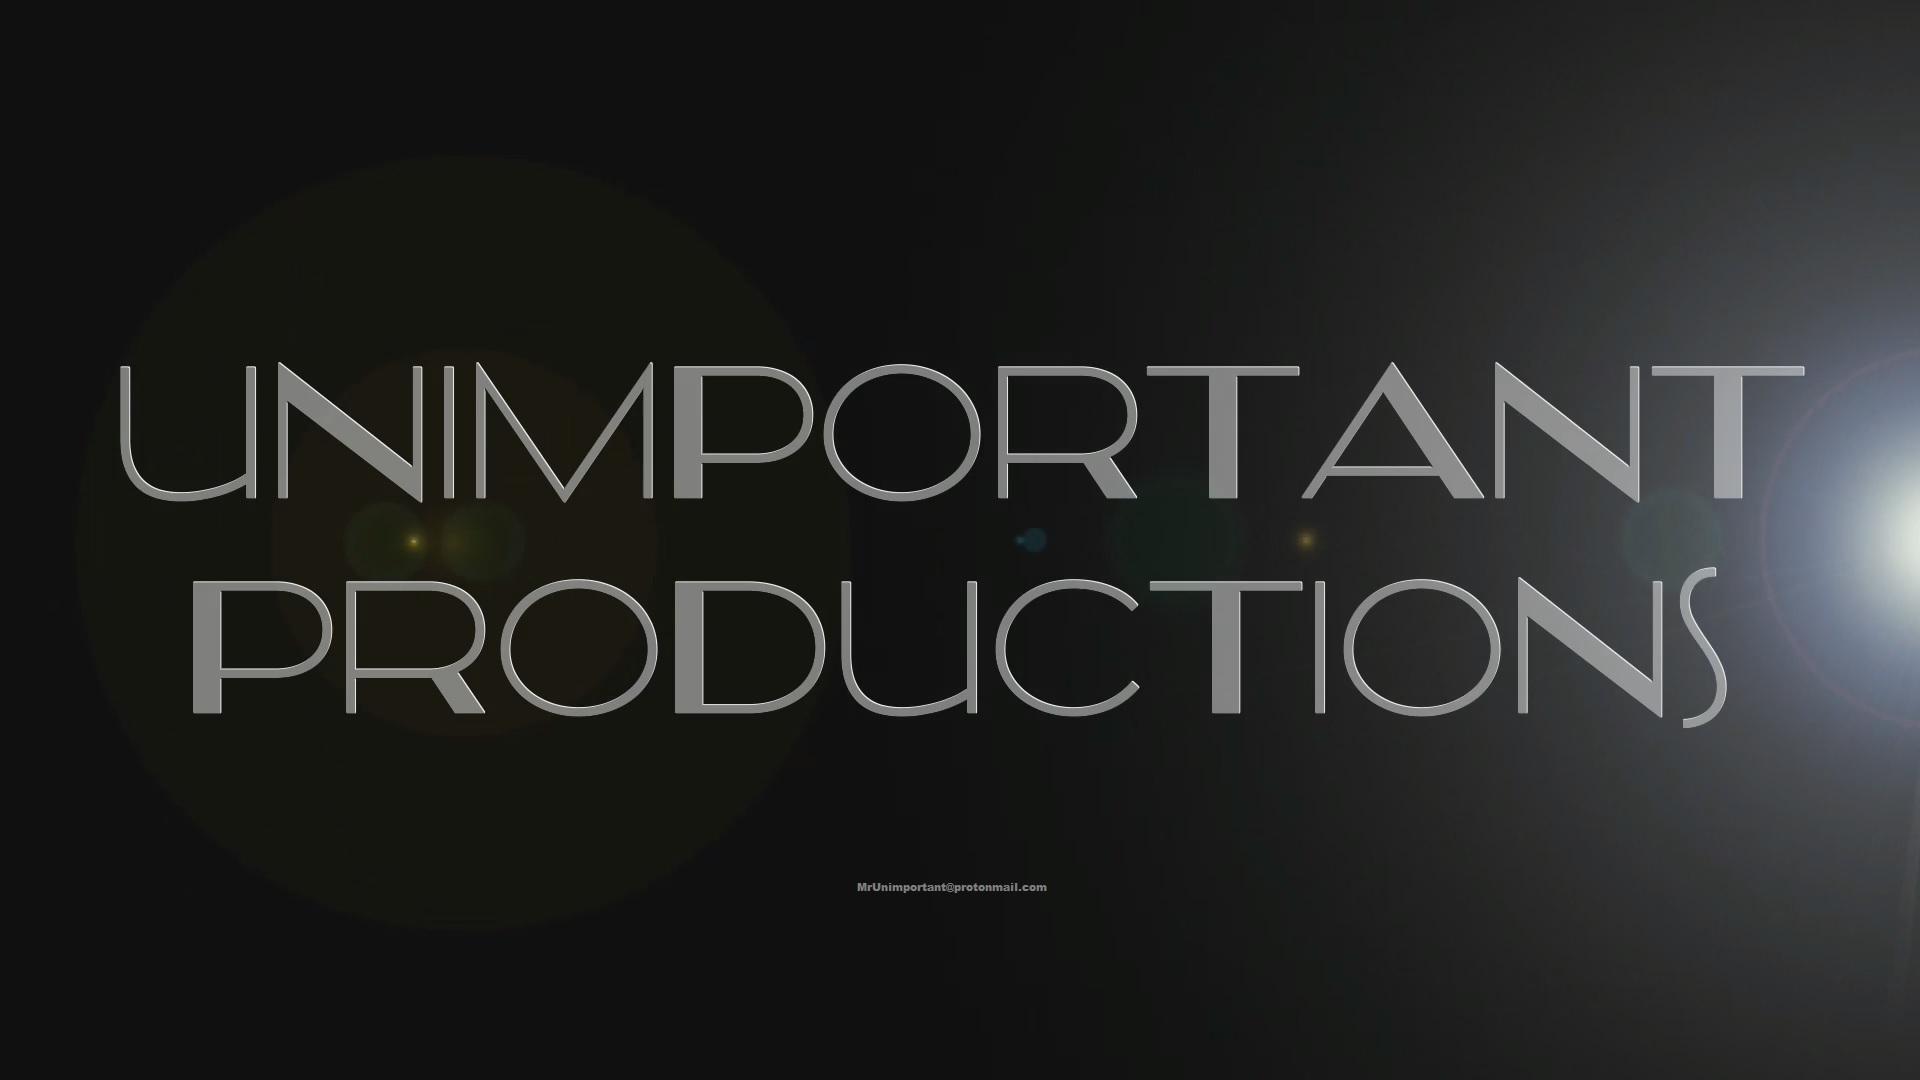 Mr unimportant productions